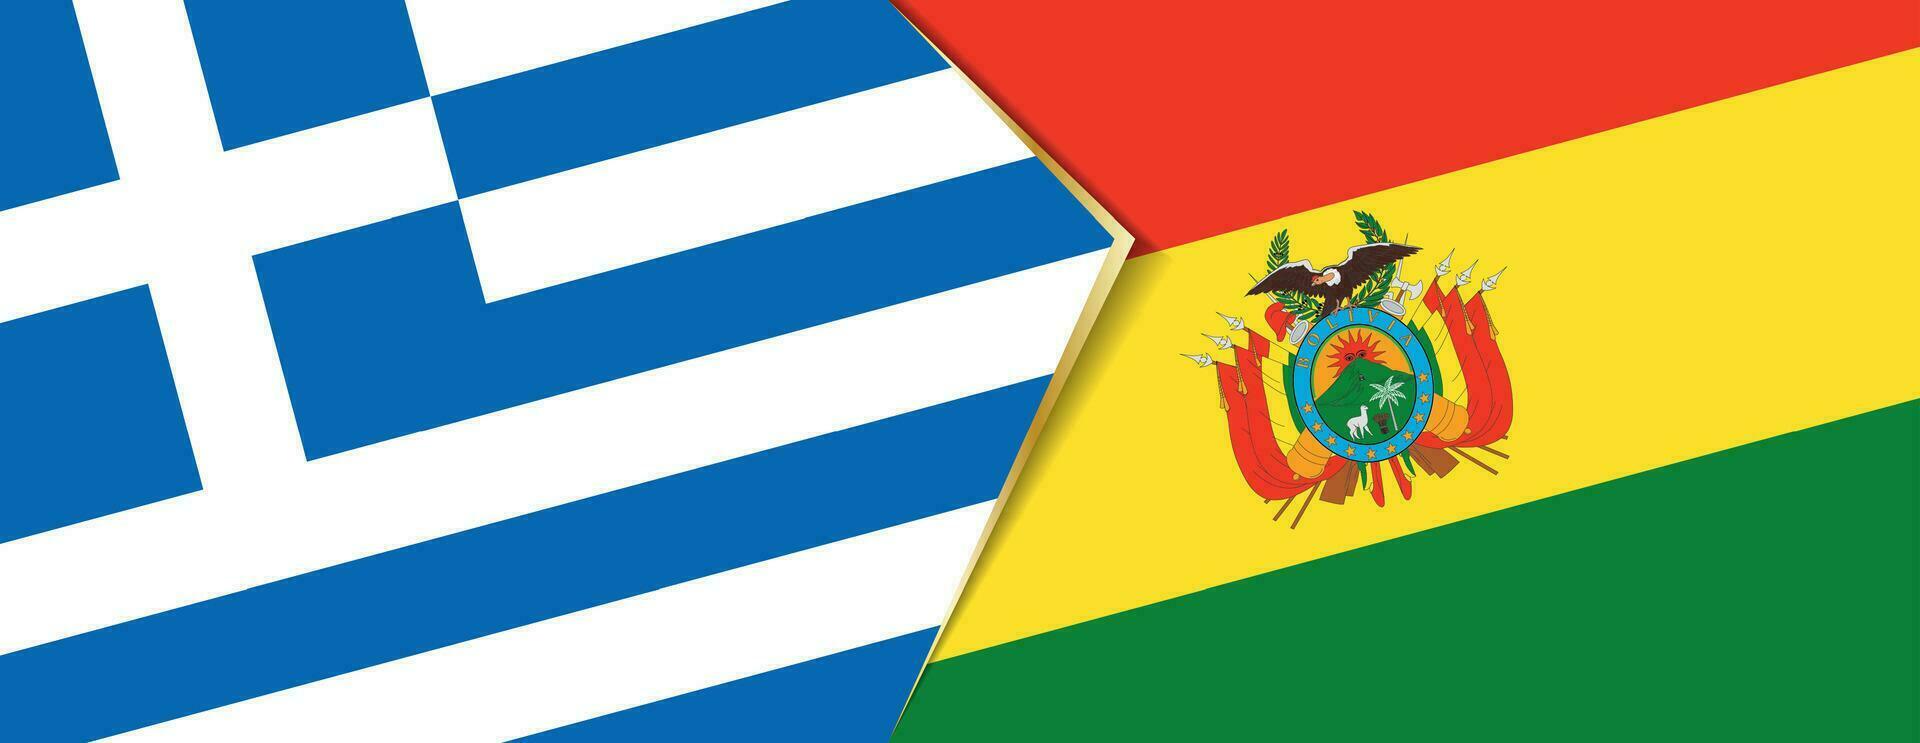 Griekenland en Bolivia vlaggen, twee vector vlaggen.